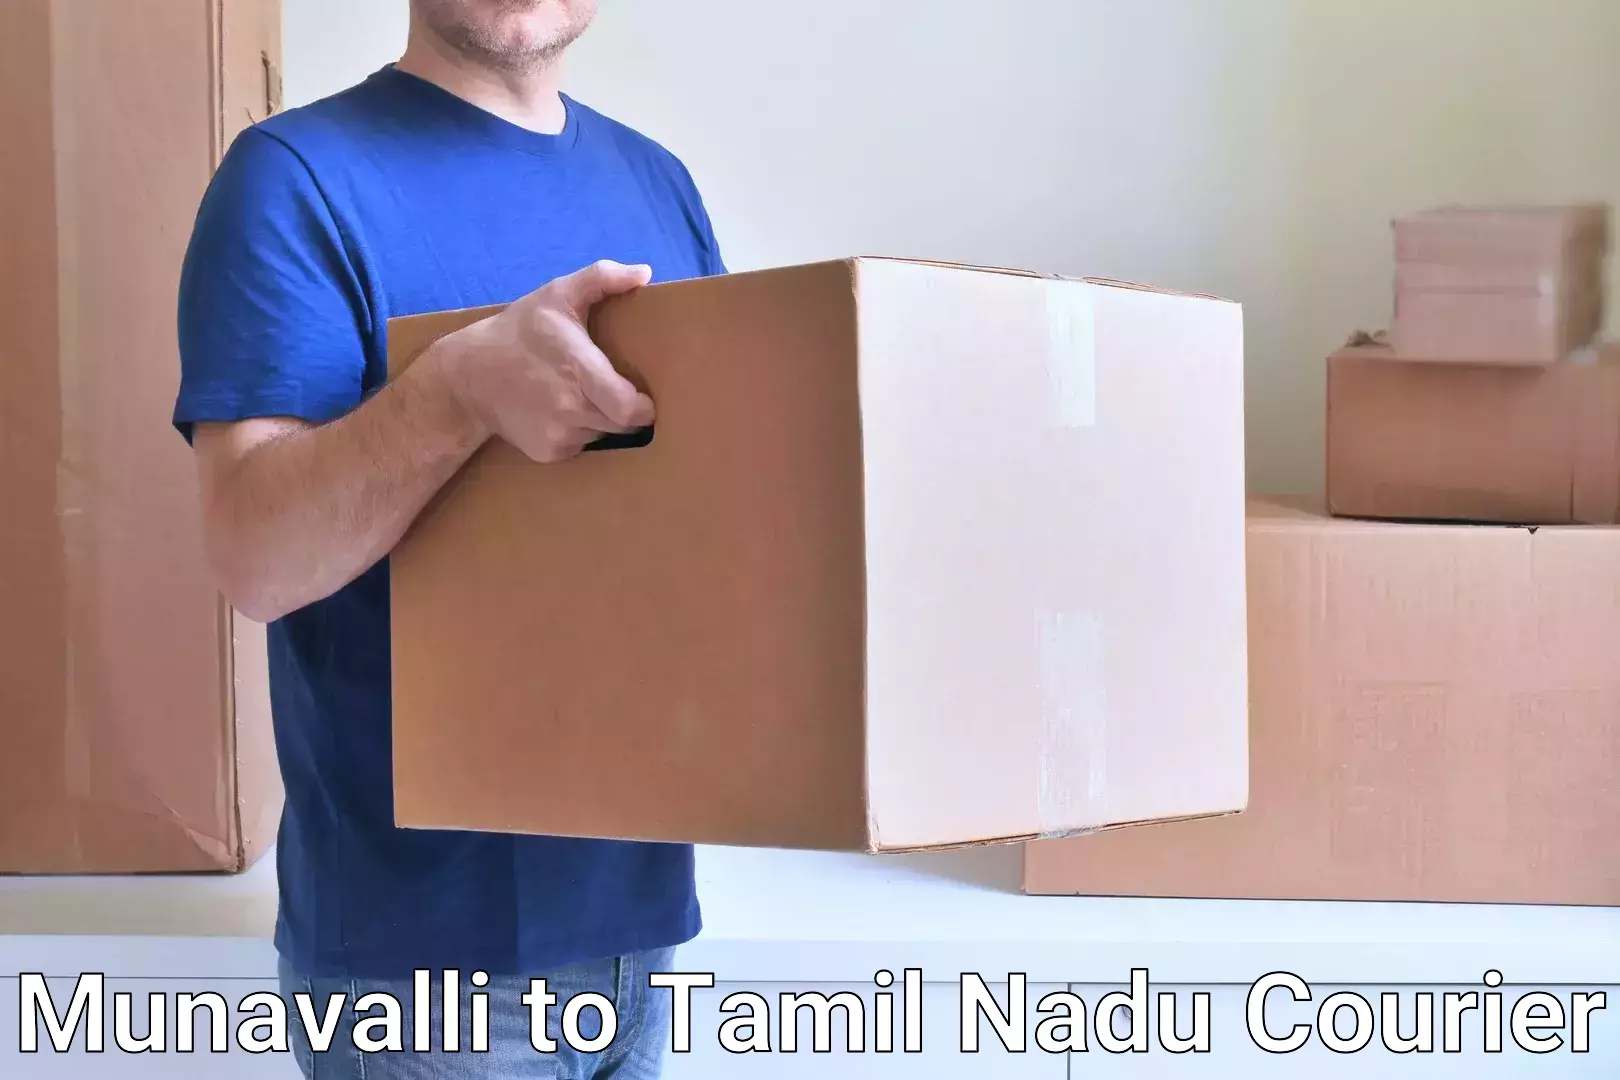 Ocean freight courier Munavalli to Tamil Nadu